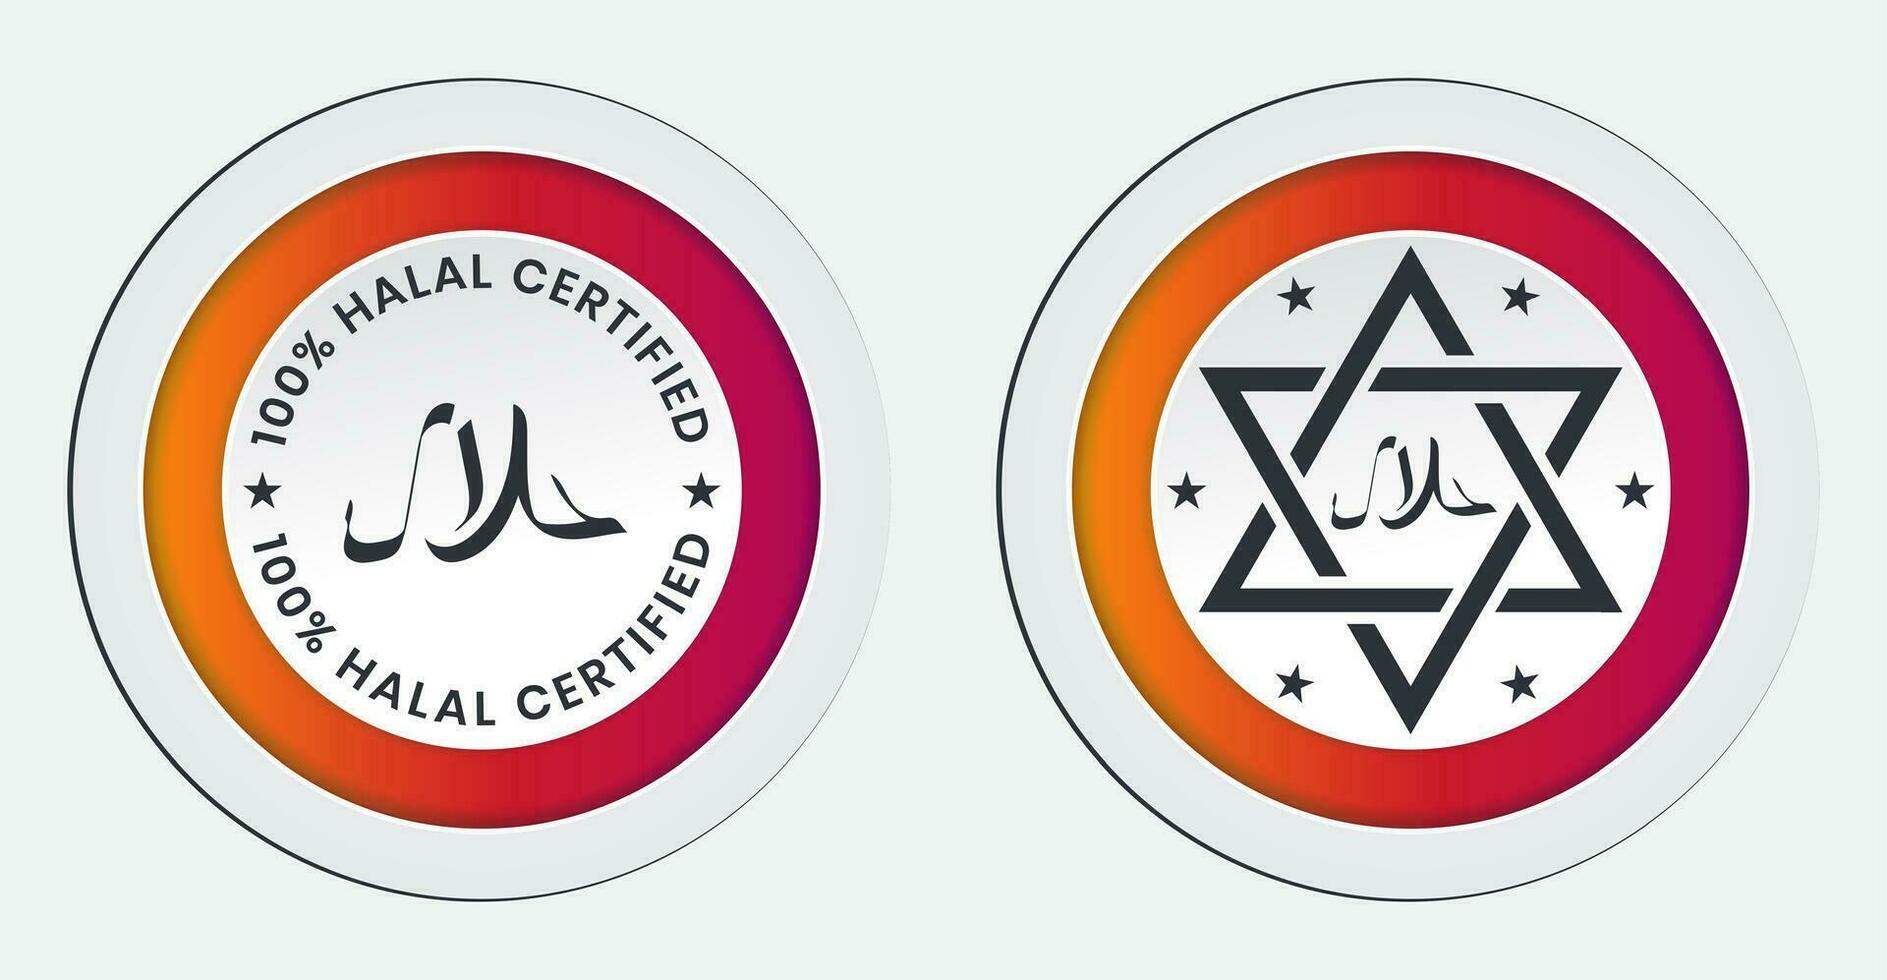 halal comida producto certificado pegatina etiqueta para aplicaciones y sitios web vector